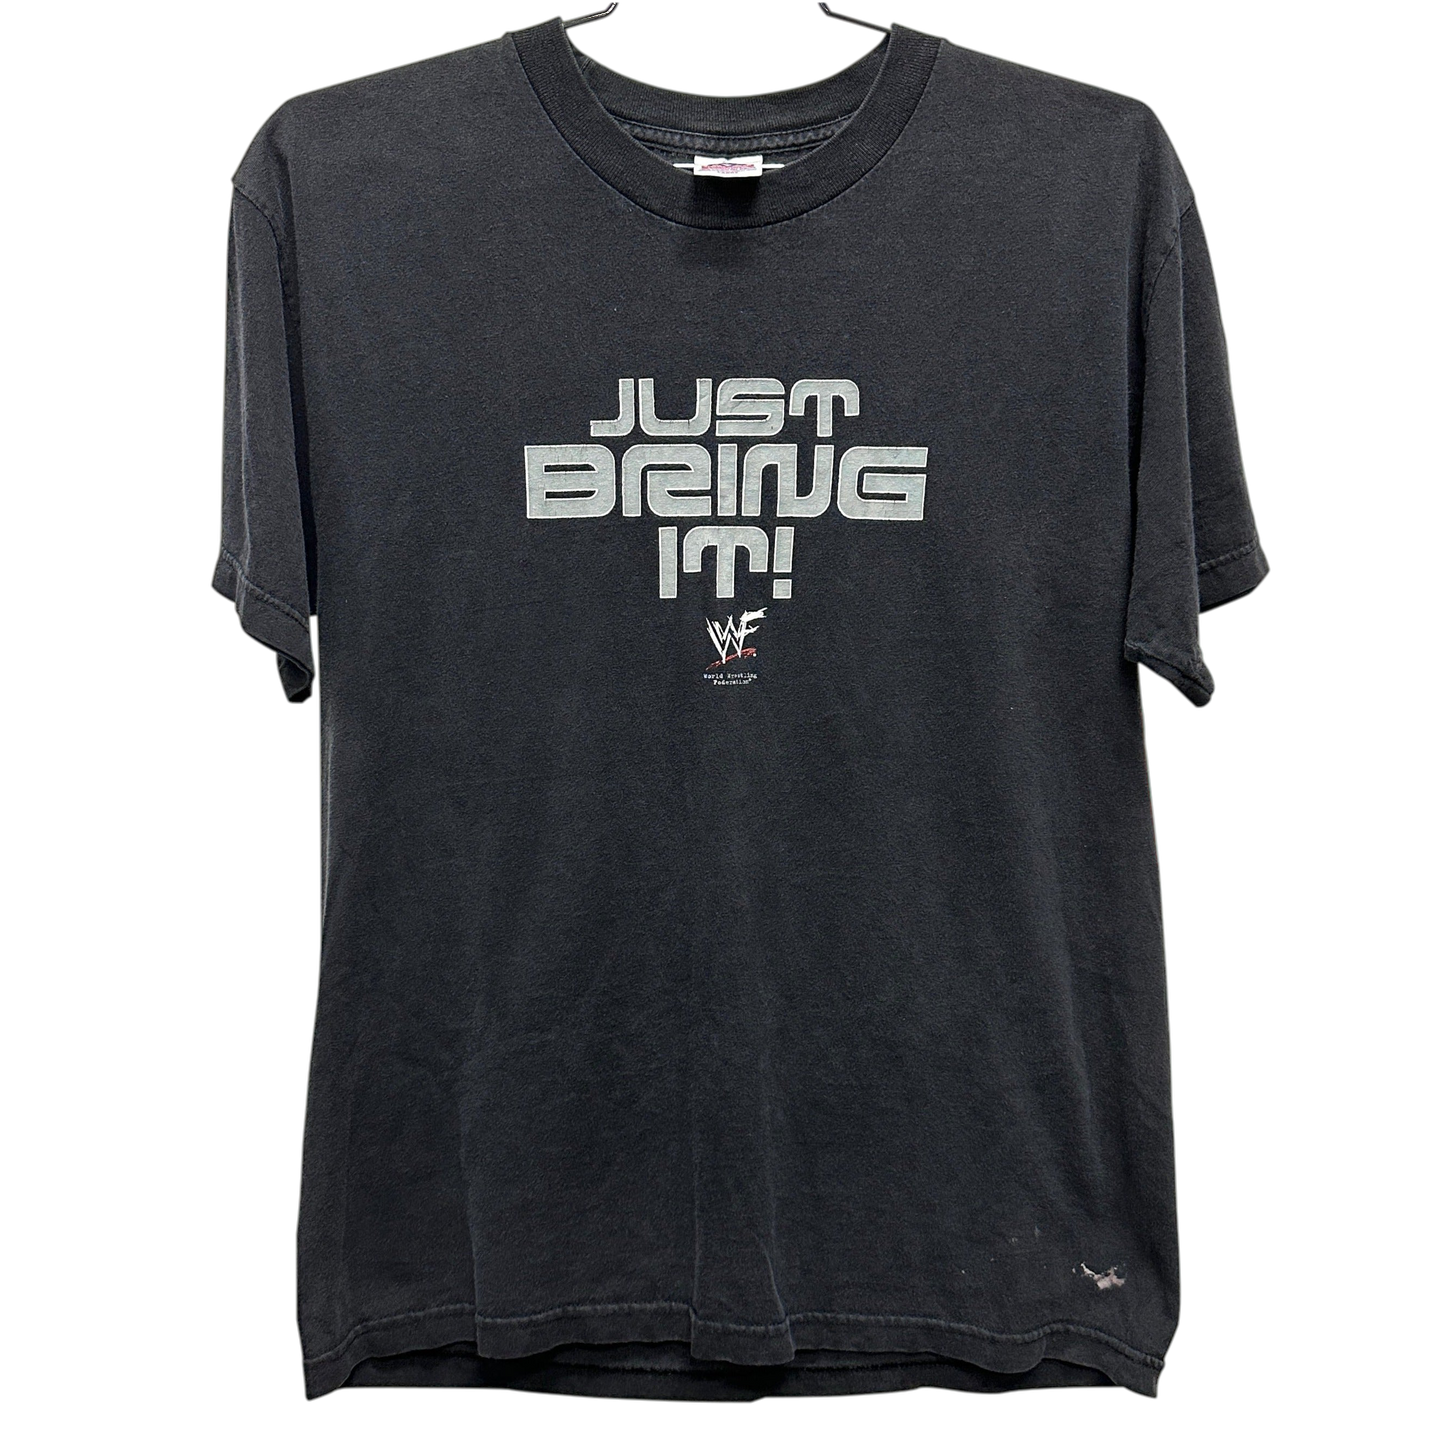 '00 The Rock "Just Bring It" Black WWF Wrestling T-shirt sz L